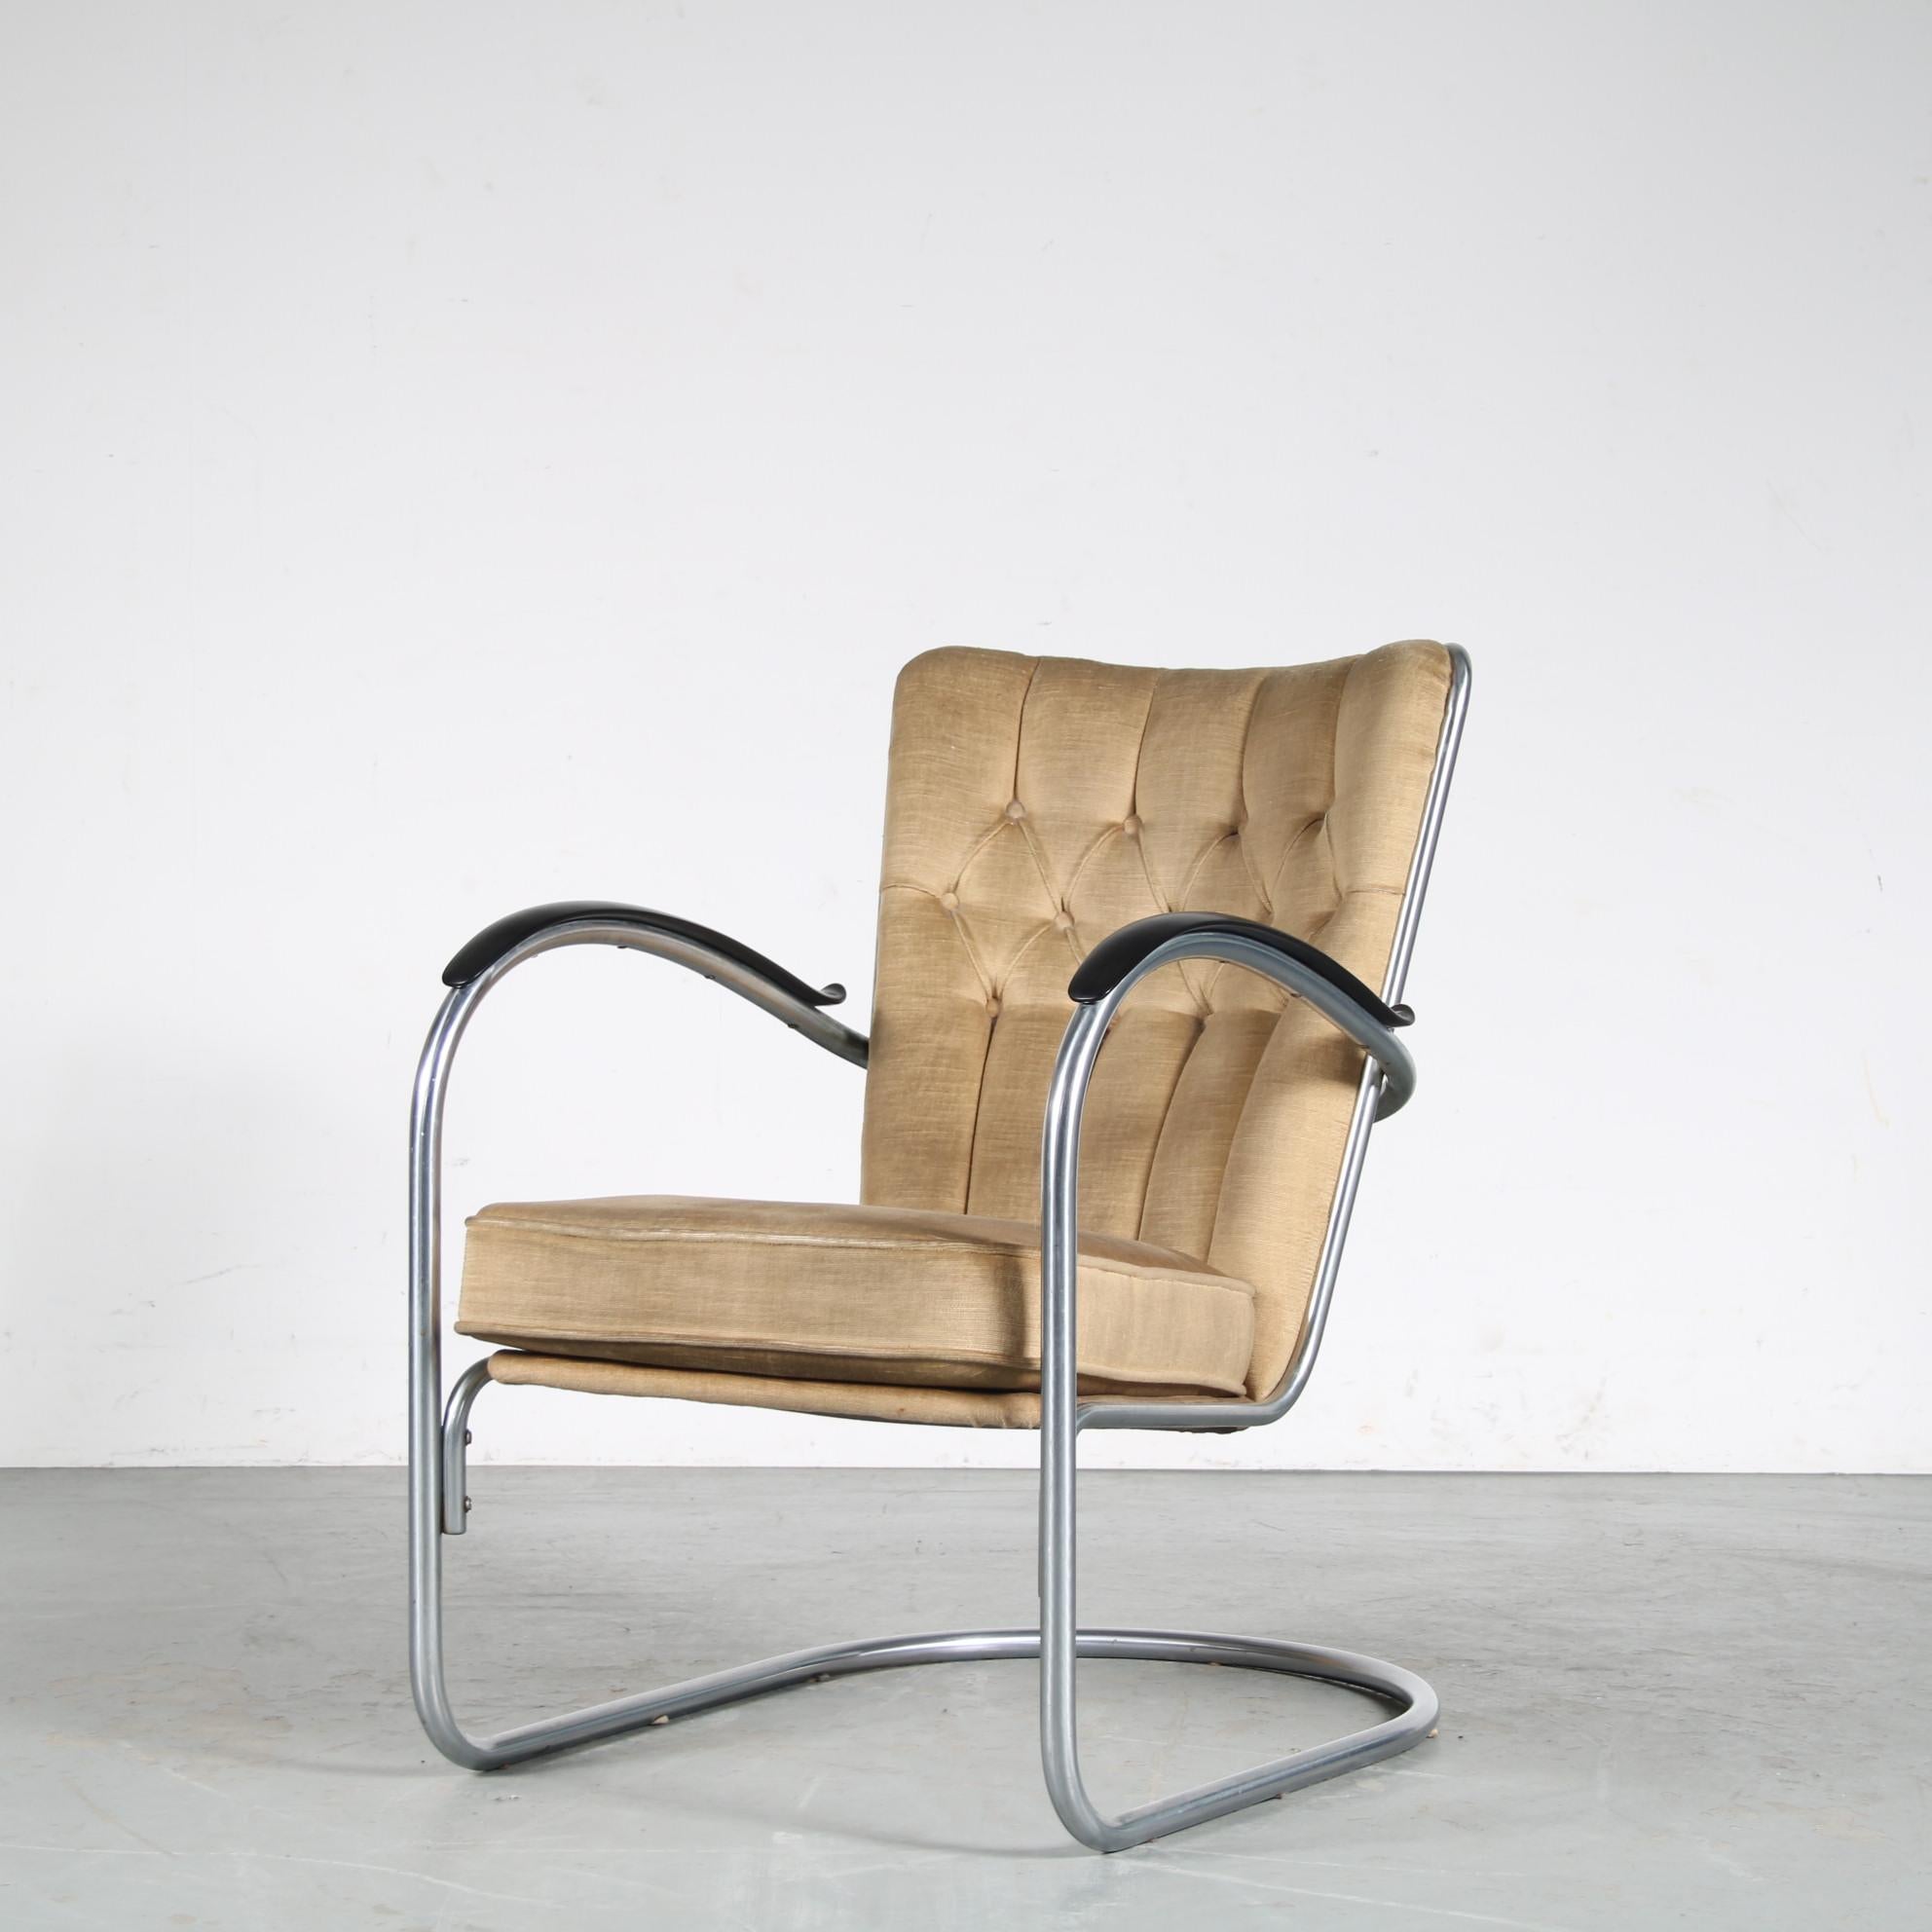 Un joli fauteuil originaire des Pays-Bas, fabriqué par Gispen et conçu par W.H. Gispen vers 1950.

Cette chaise, modèle 